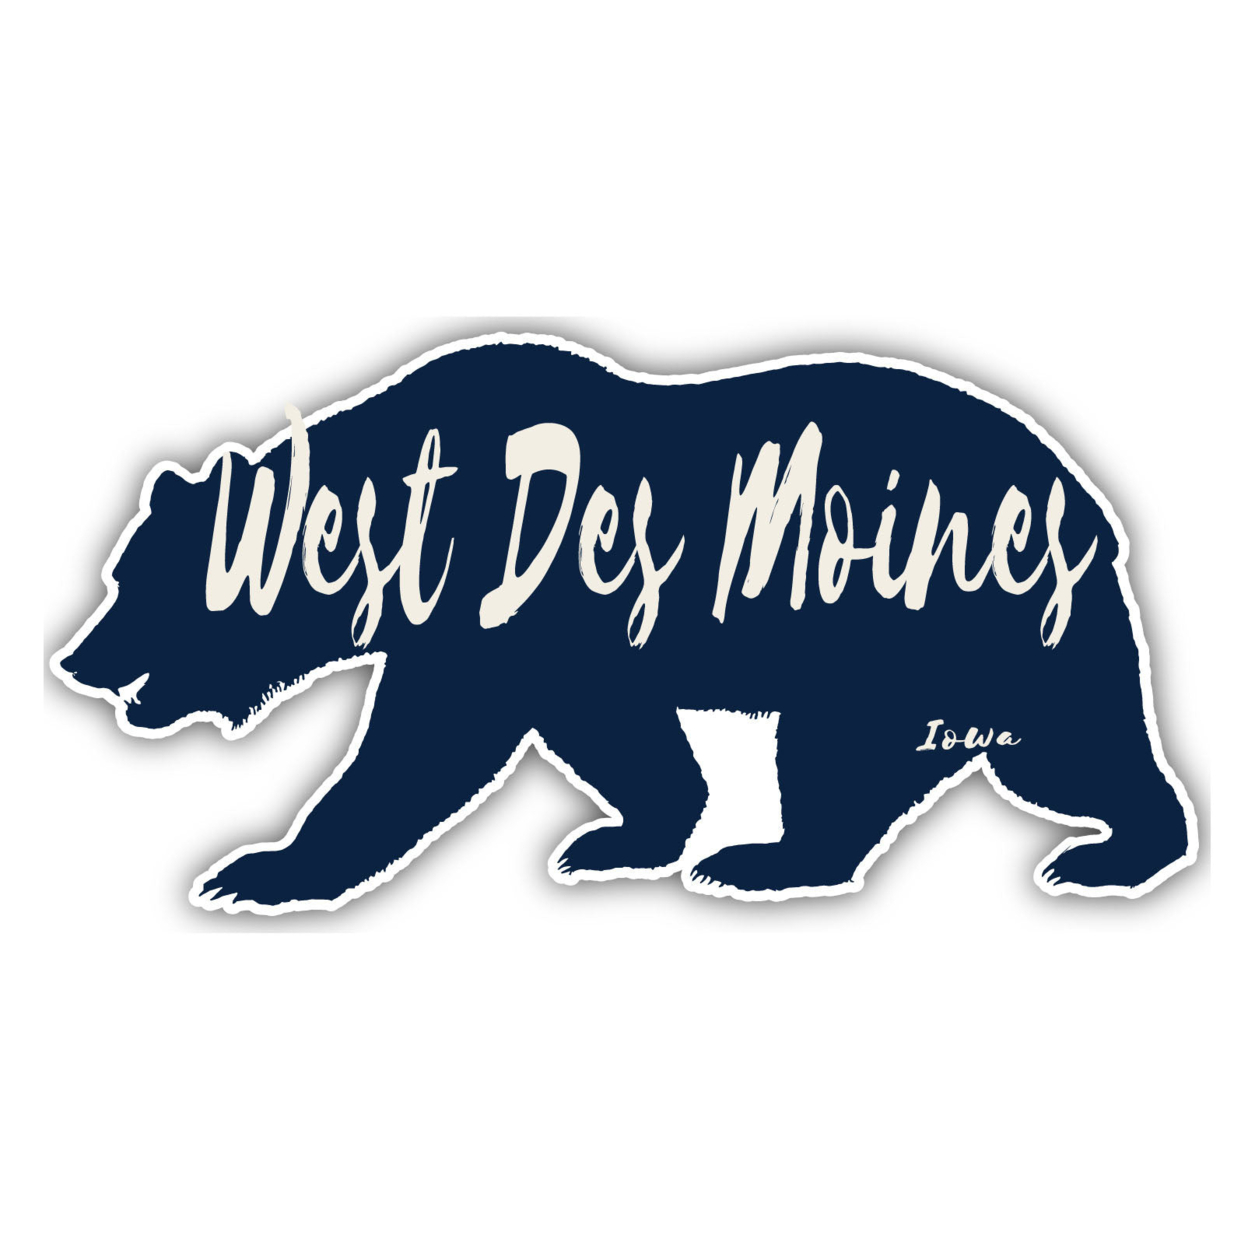 West Des Moines Iowa Souvenir Decorative Stickers (Choose Theme And Size) - Single Unit, 2-Inch, Bear